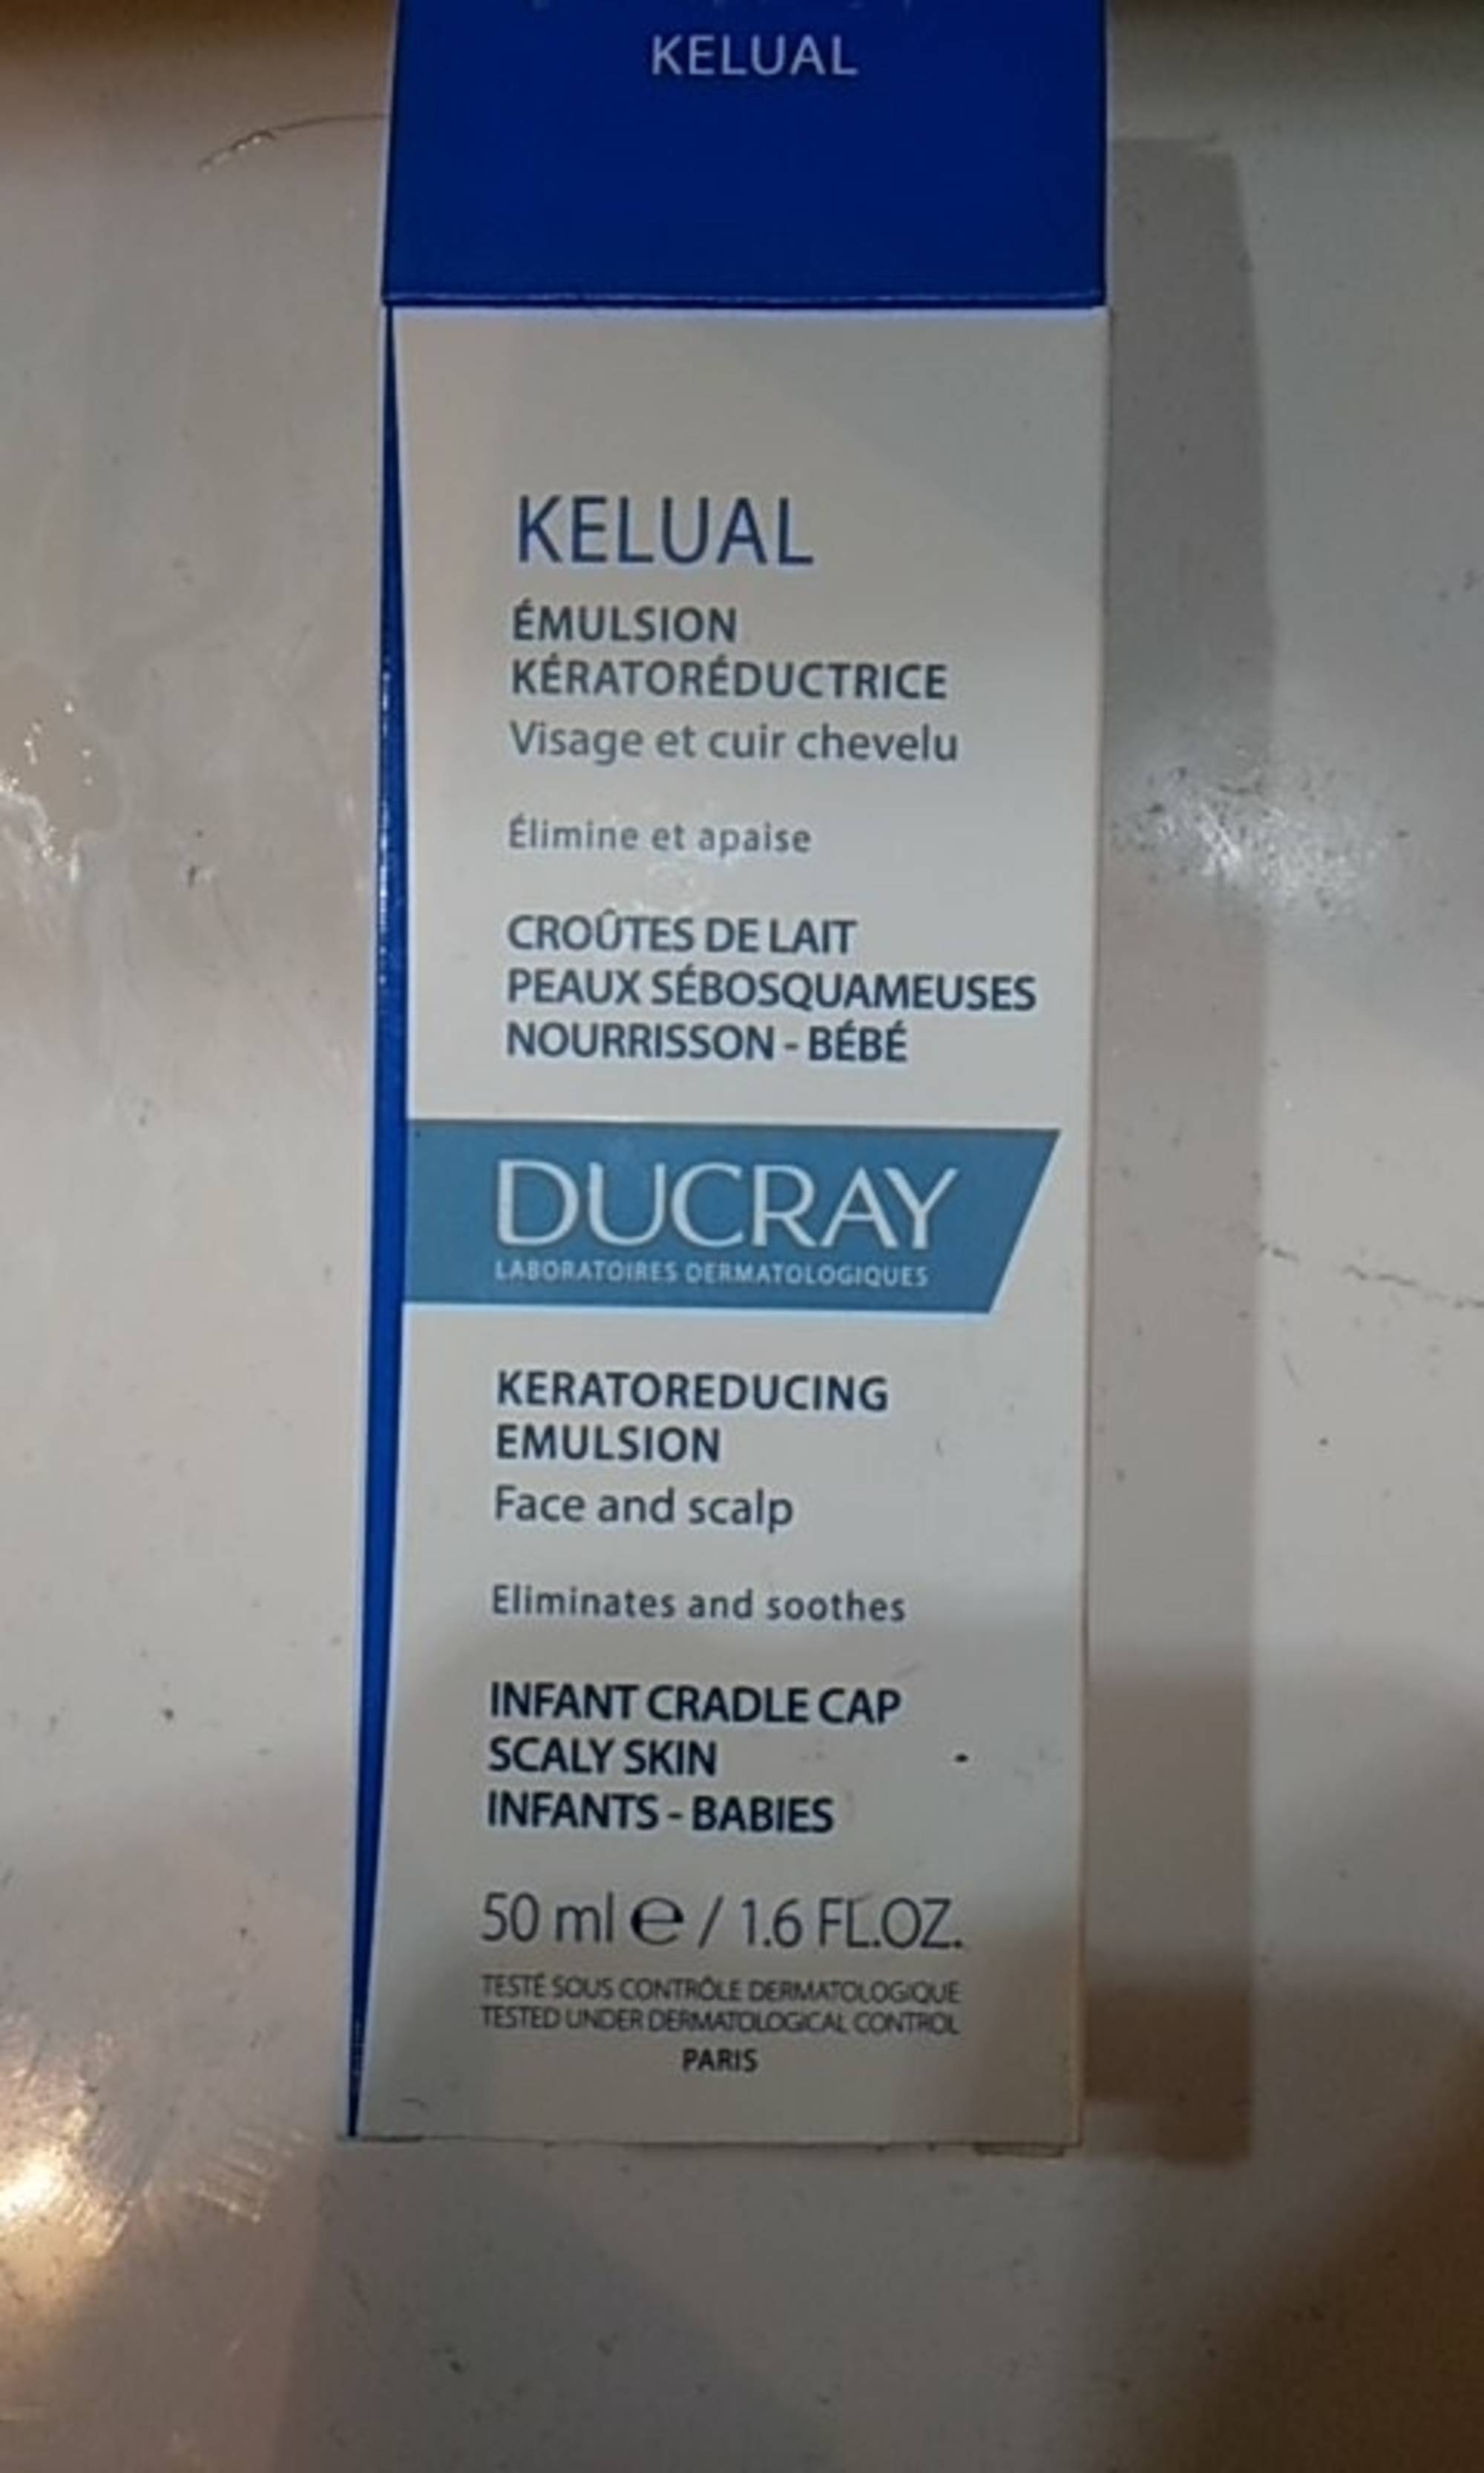 DUCRAY - Kelual - Émulsion kératoréductrice - Croûtes de lait Peaux sébosquameuses nourrisson bébé